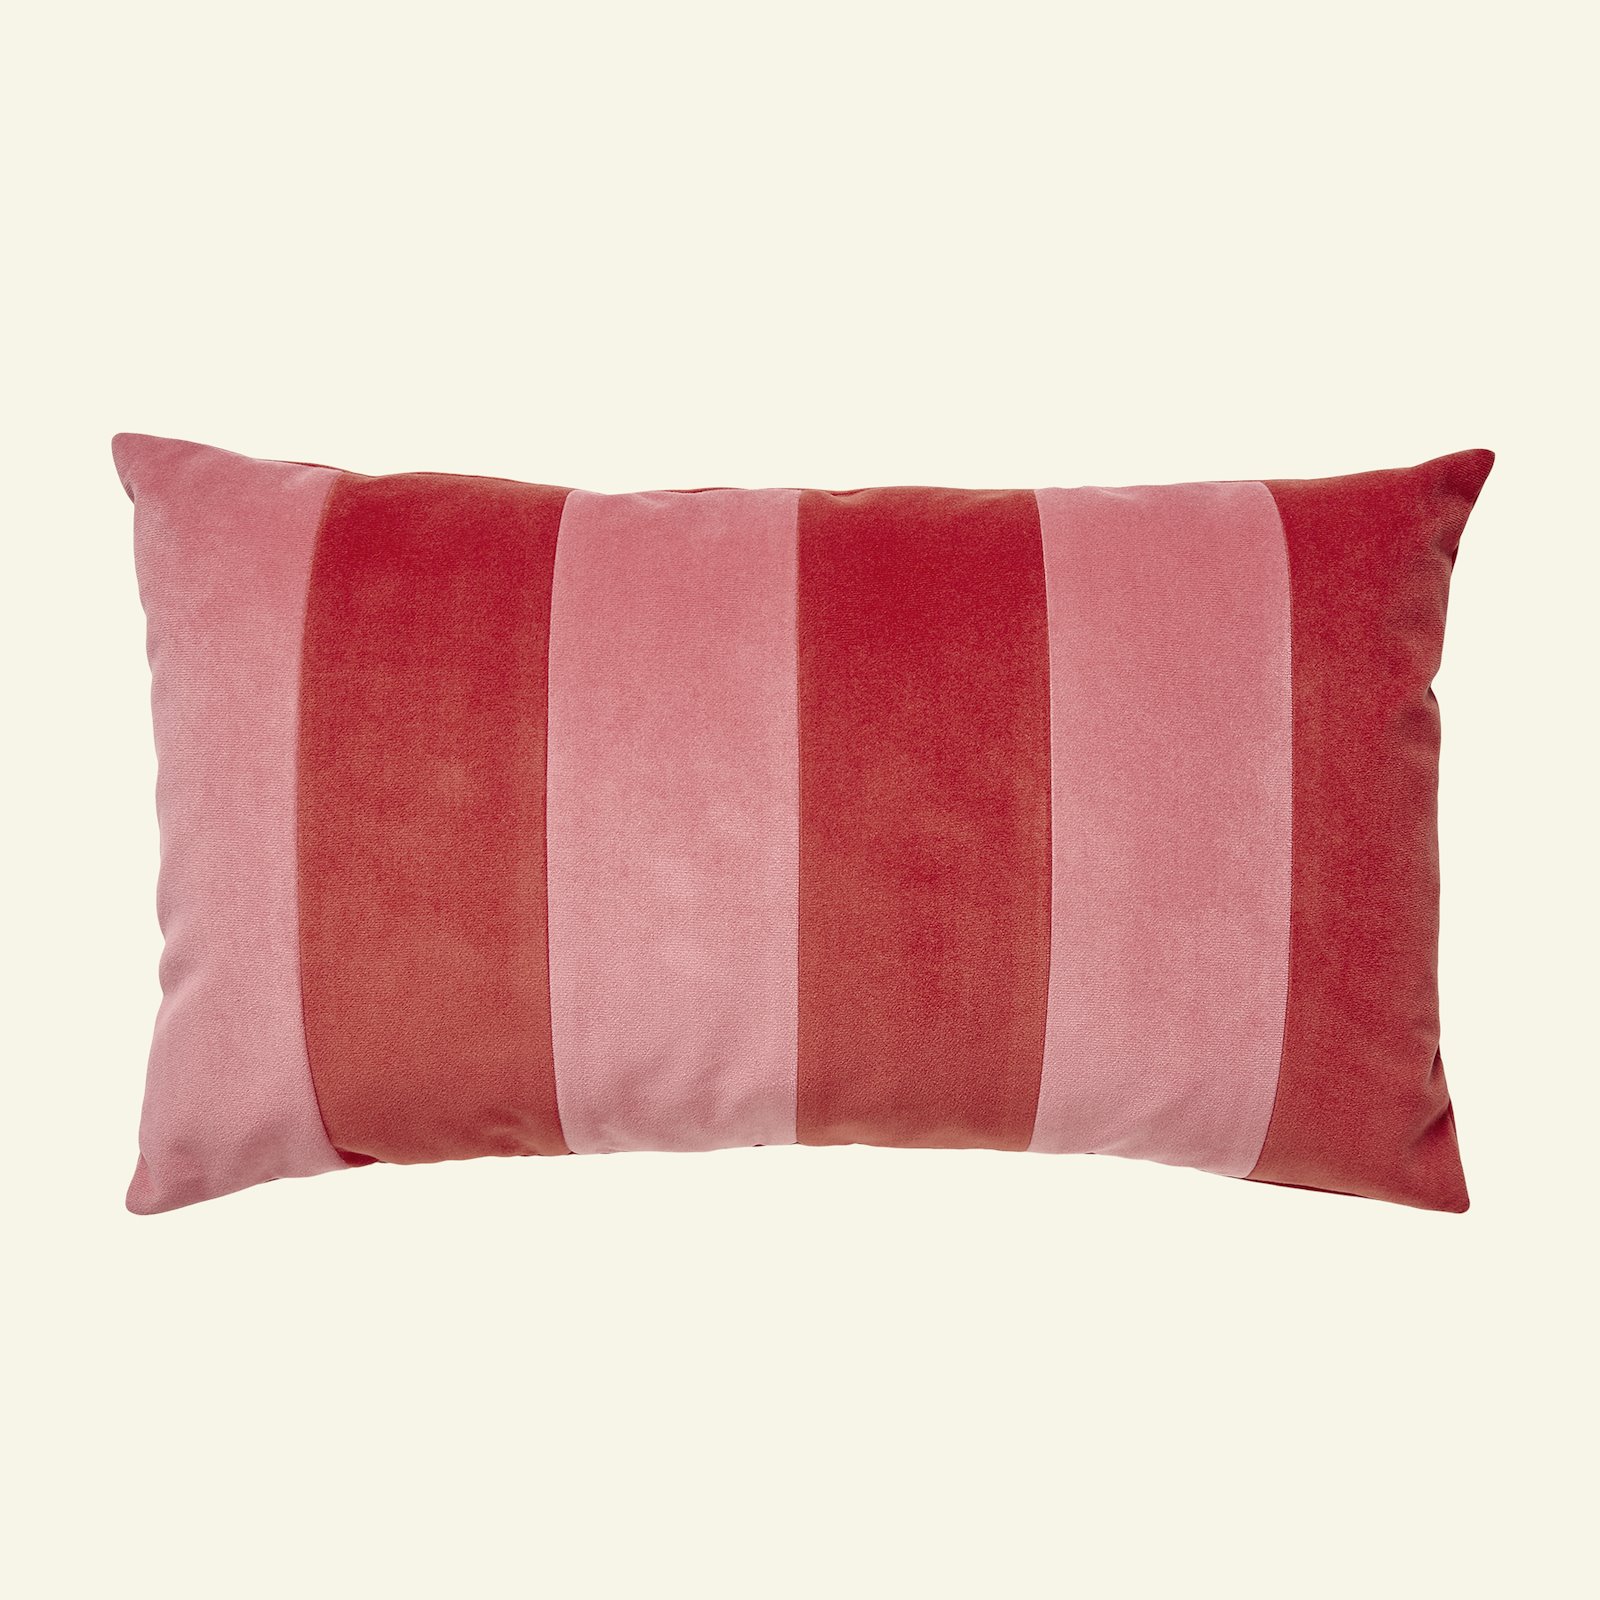 Upholstery velvet dark dusty pink p90287_826258_826257_sskit